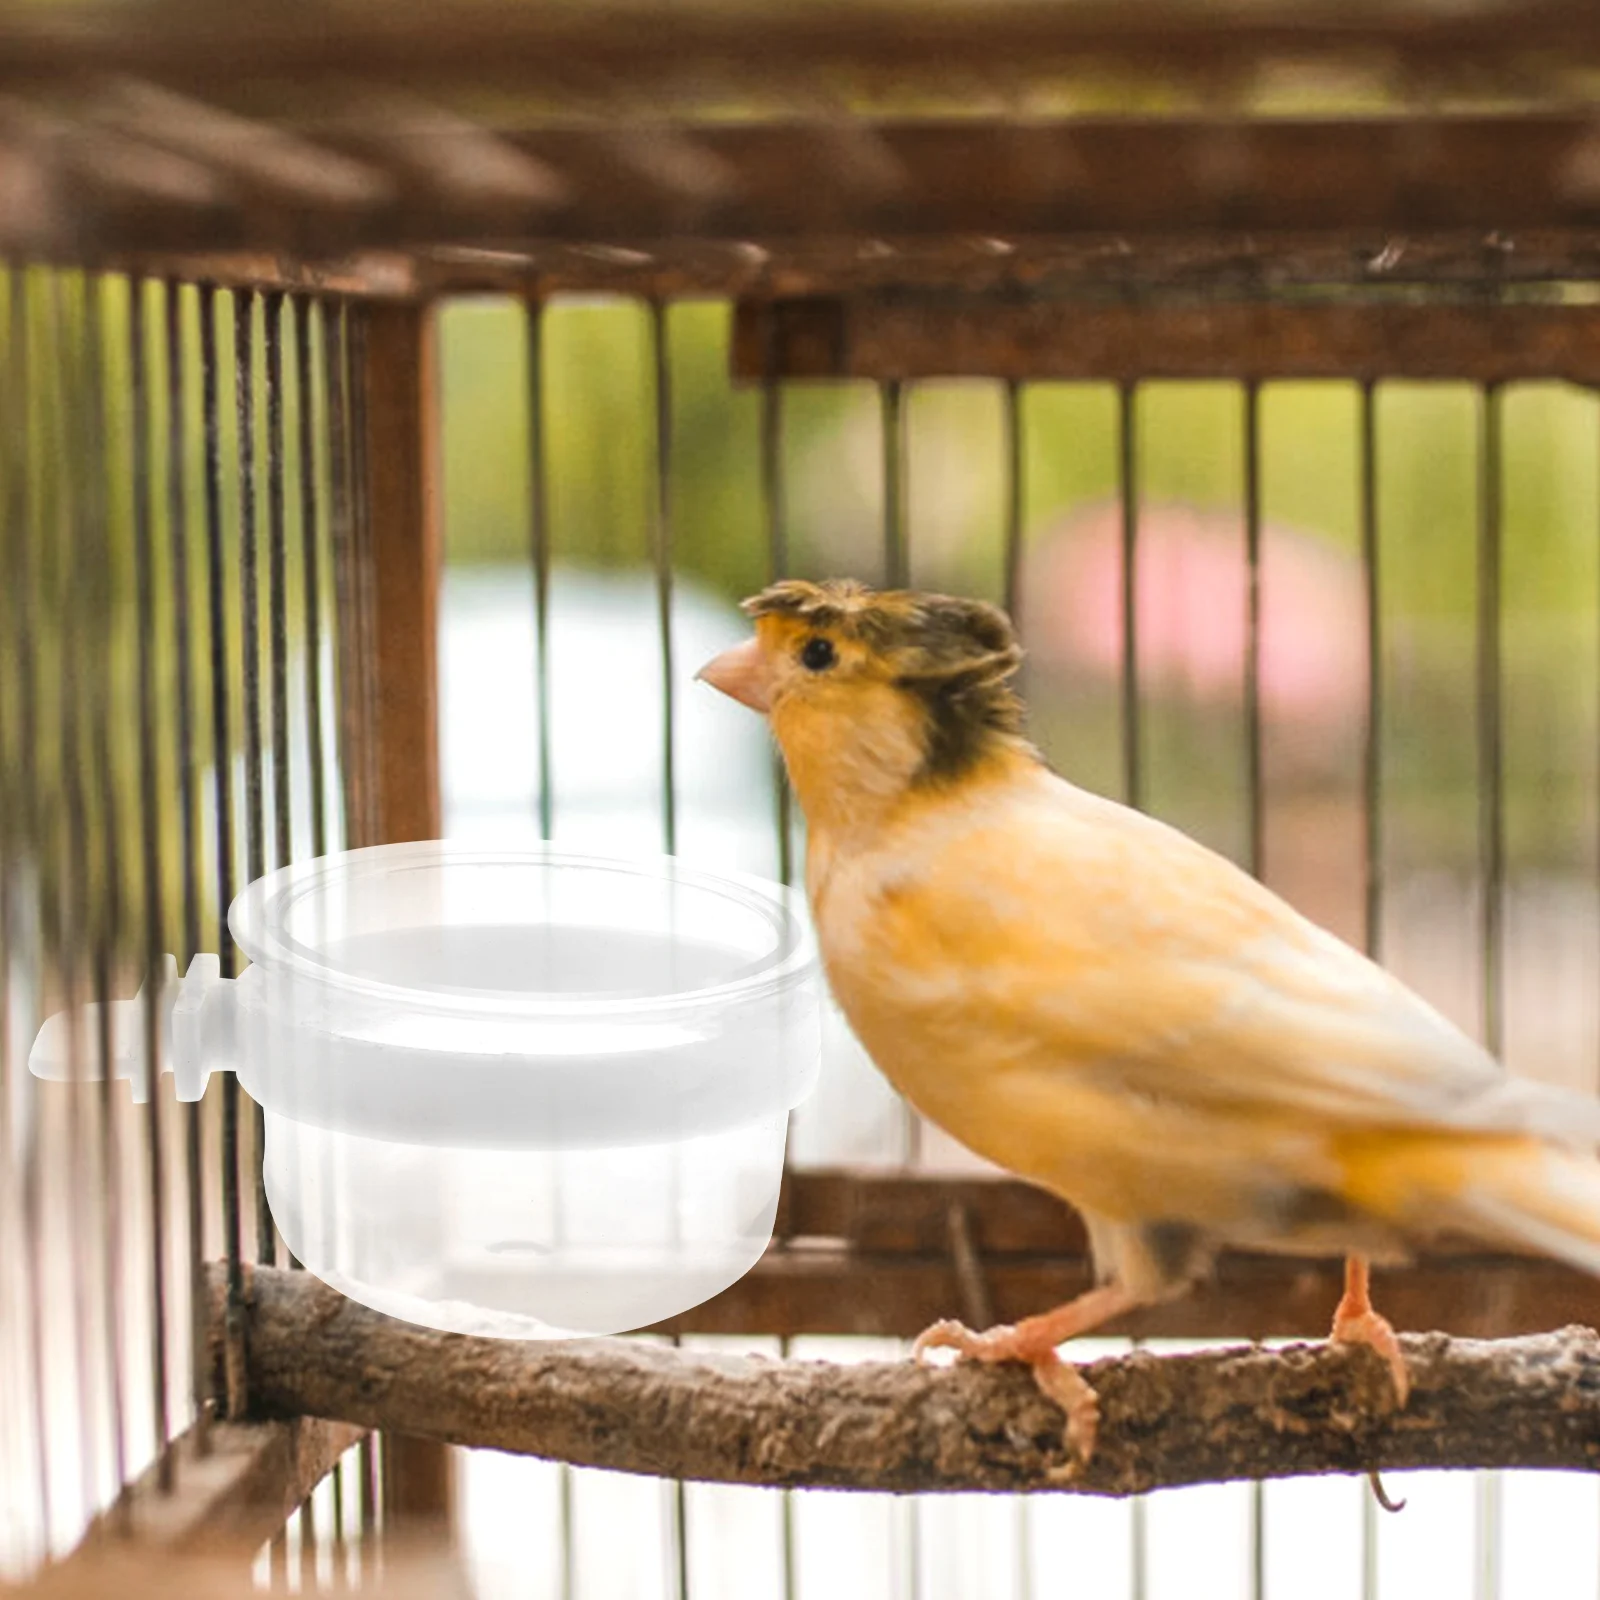 새 물 공급기, 탈착식 투명 그릇, 플라스틱 음식 컵, 쉽게 매달릴 수 있는 앵무새 벌새 케이지